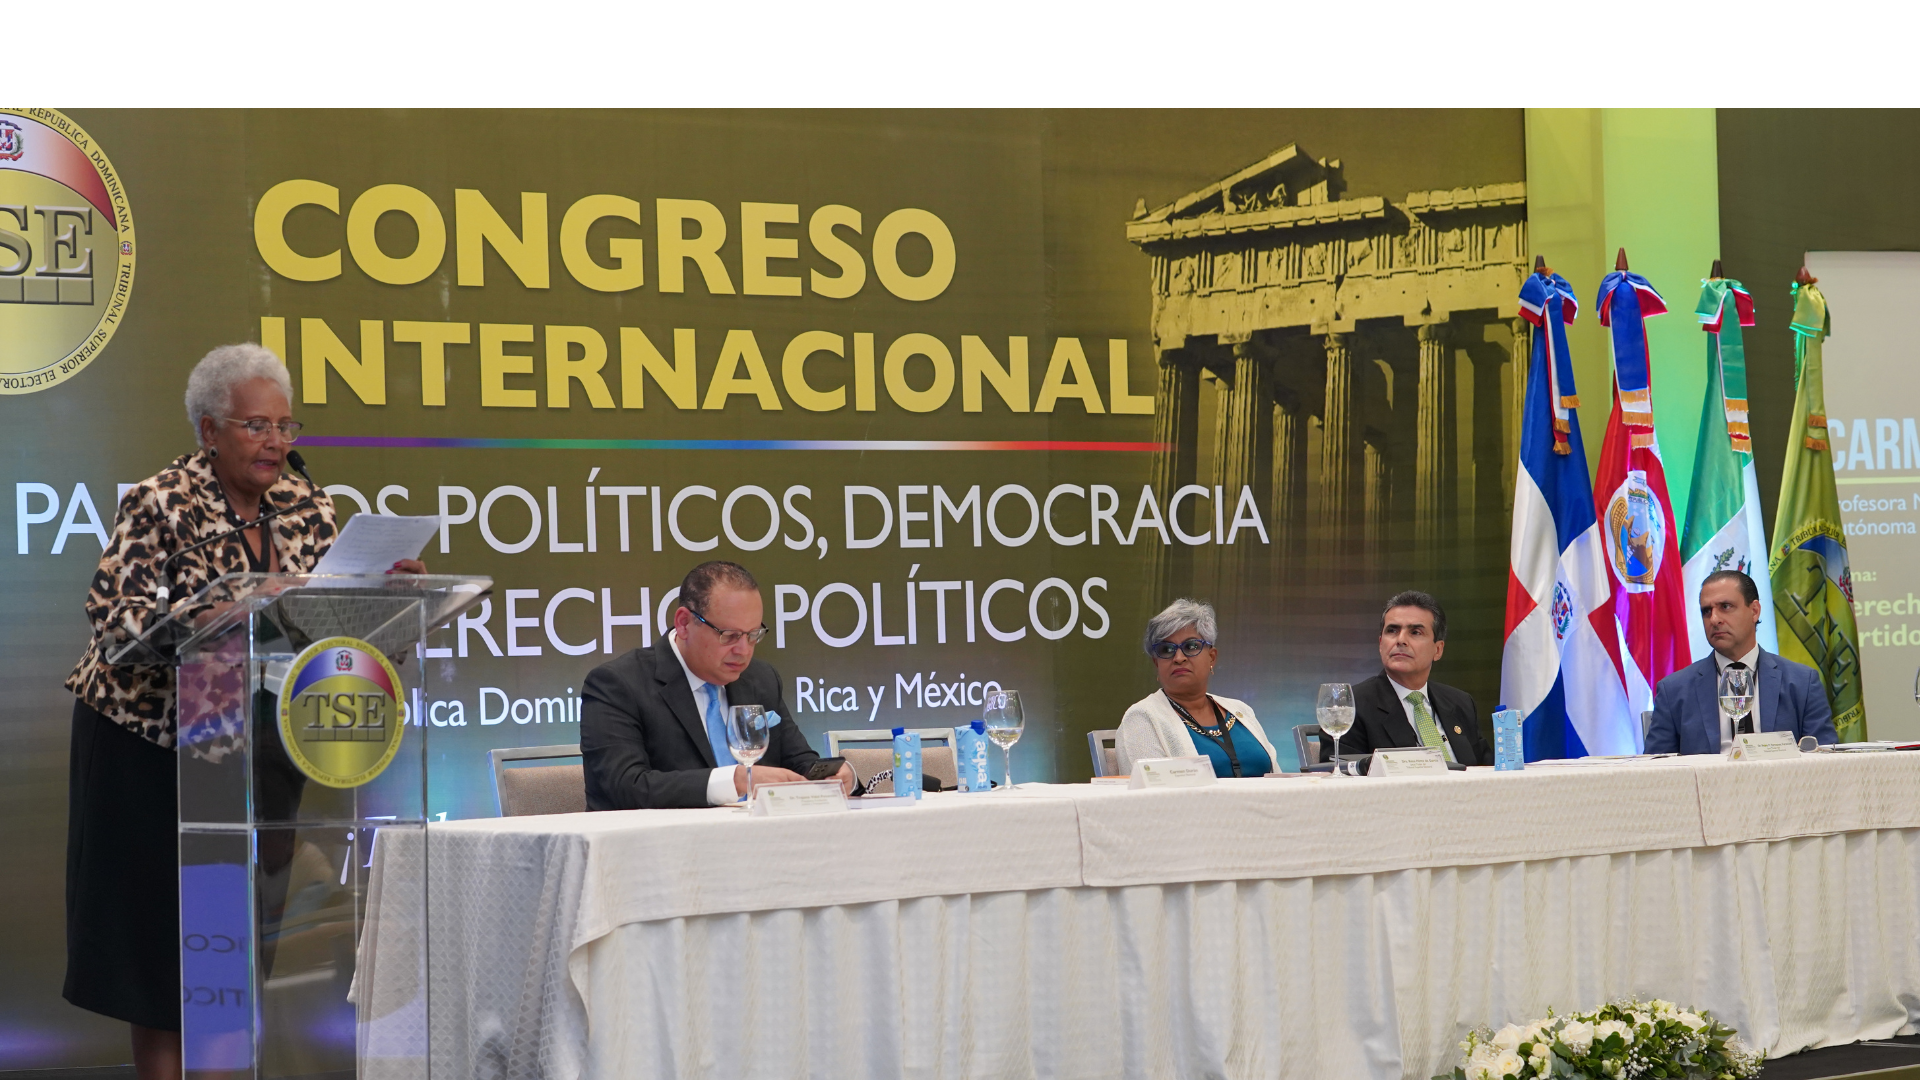 En congreso internacional Catedrática aboga por una sociedad más ética y humana